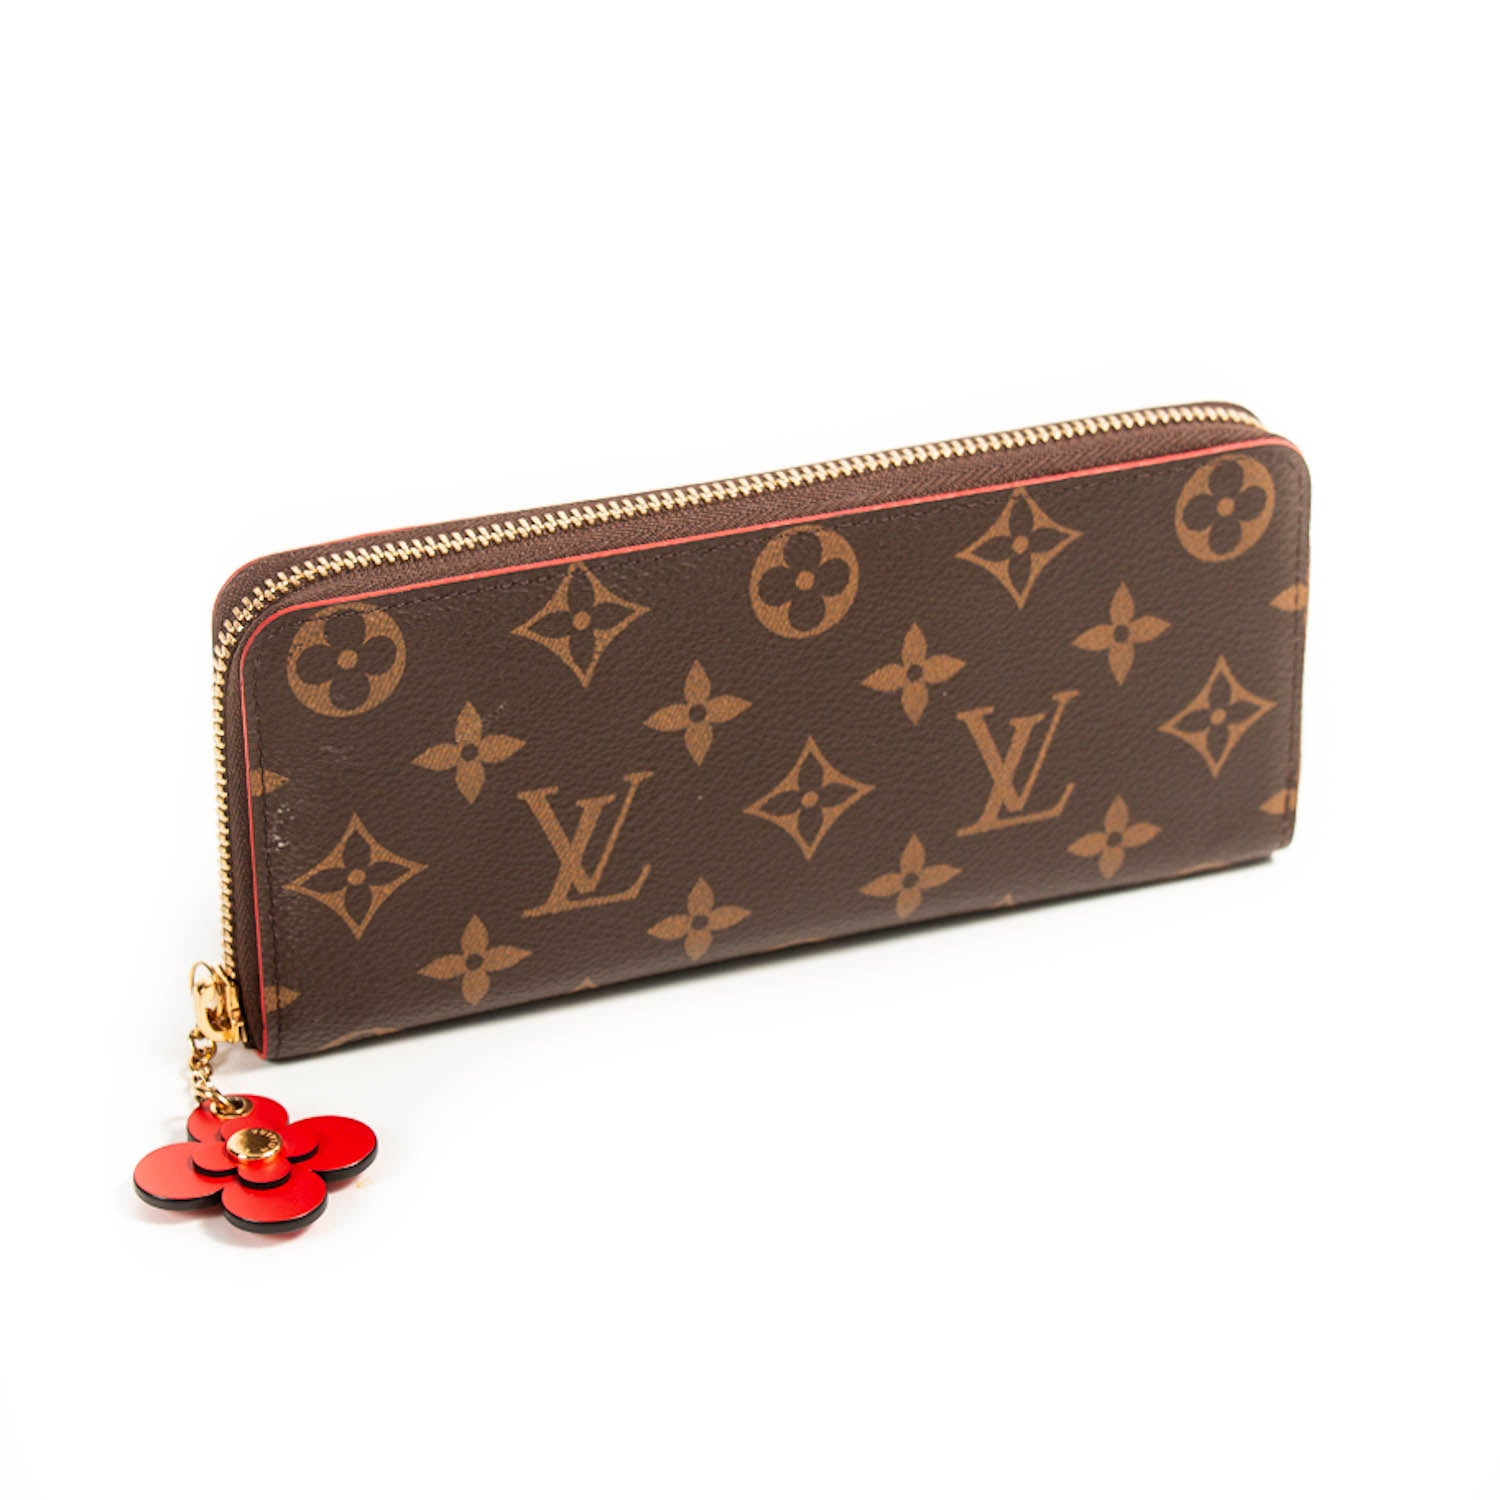 Shop Louis Vuitton CLEMENCE Clémence Wallet (M60915) by BrandShoppe